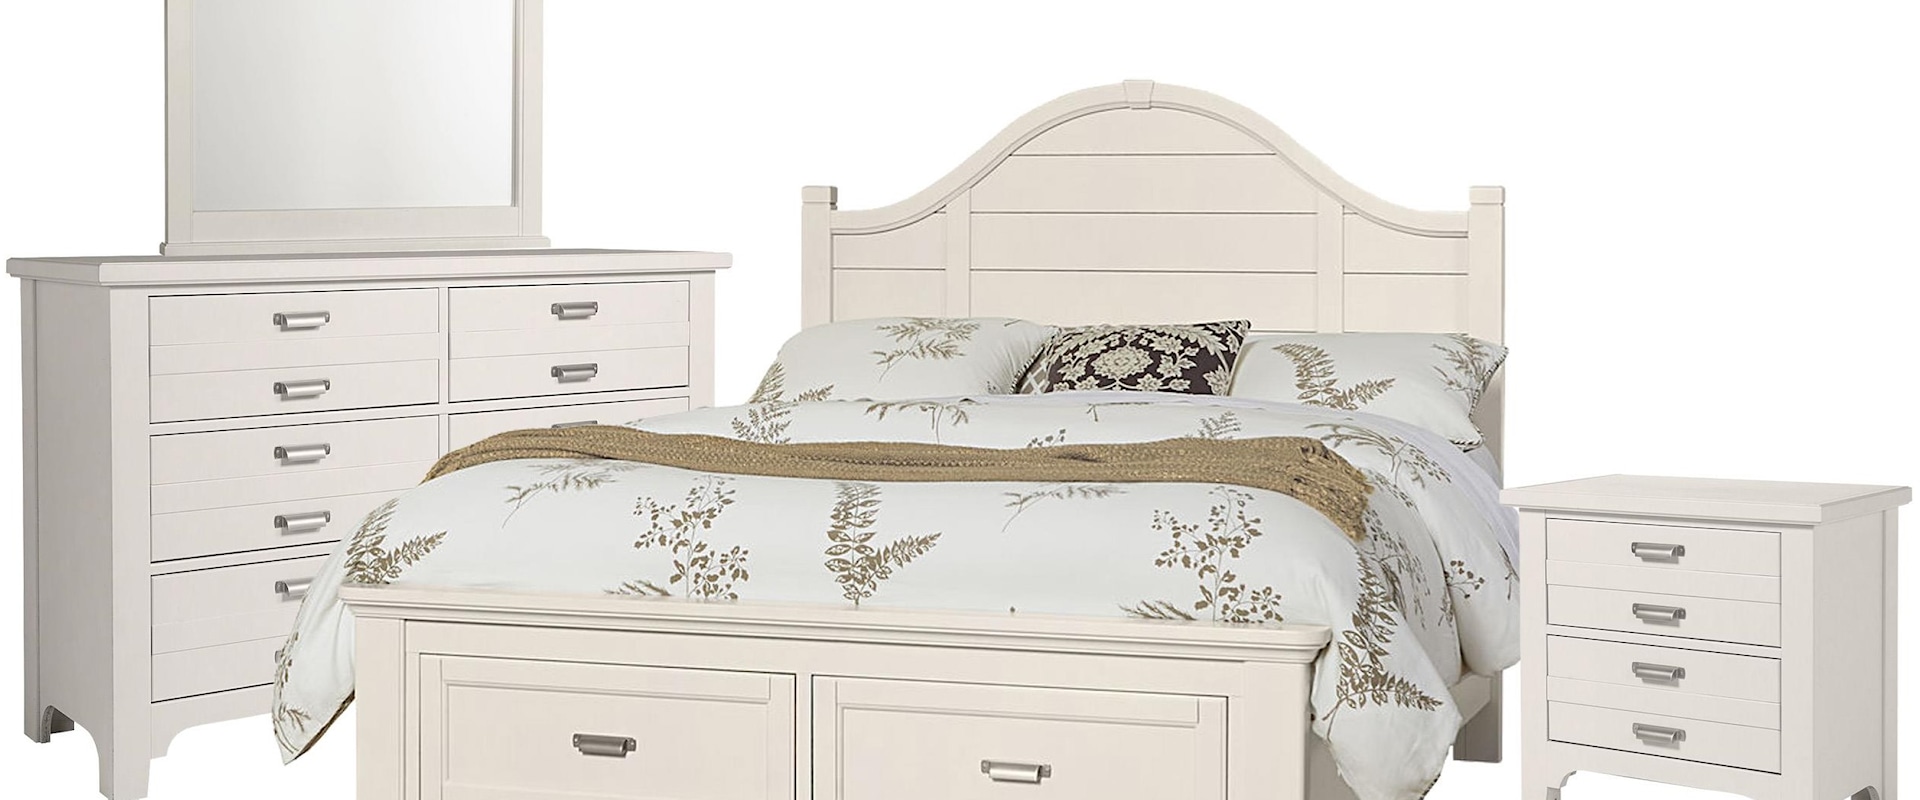 Queen Arch Storage Bed, Double Dresser, Landscape Mirror, 2 Drawer Nightstand